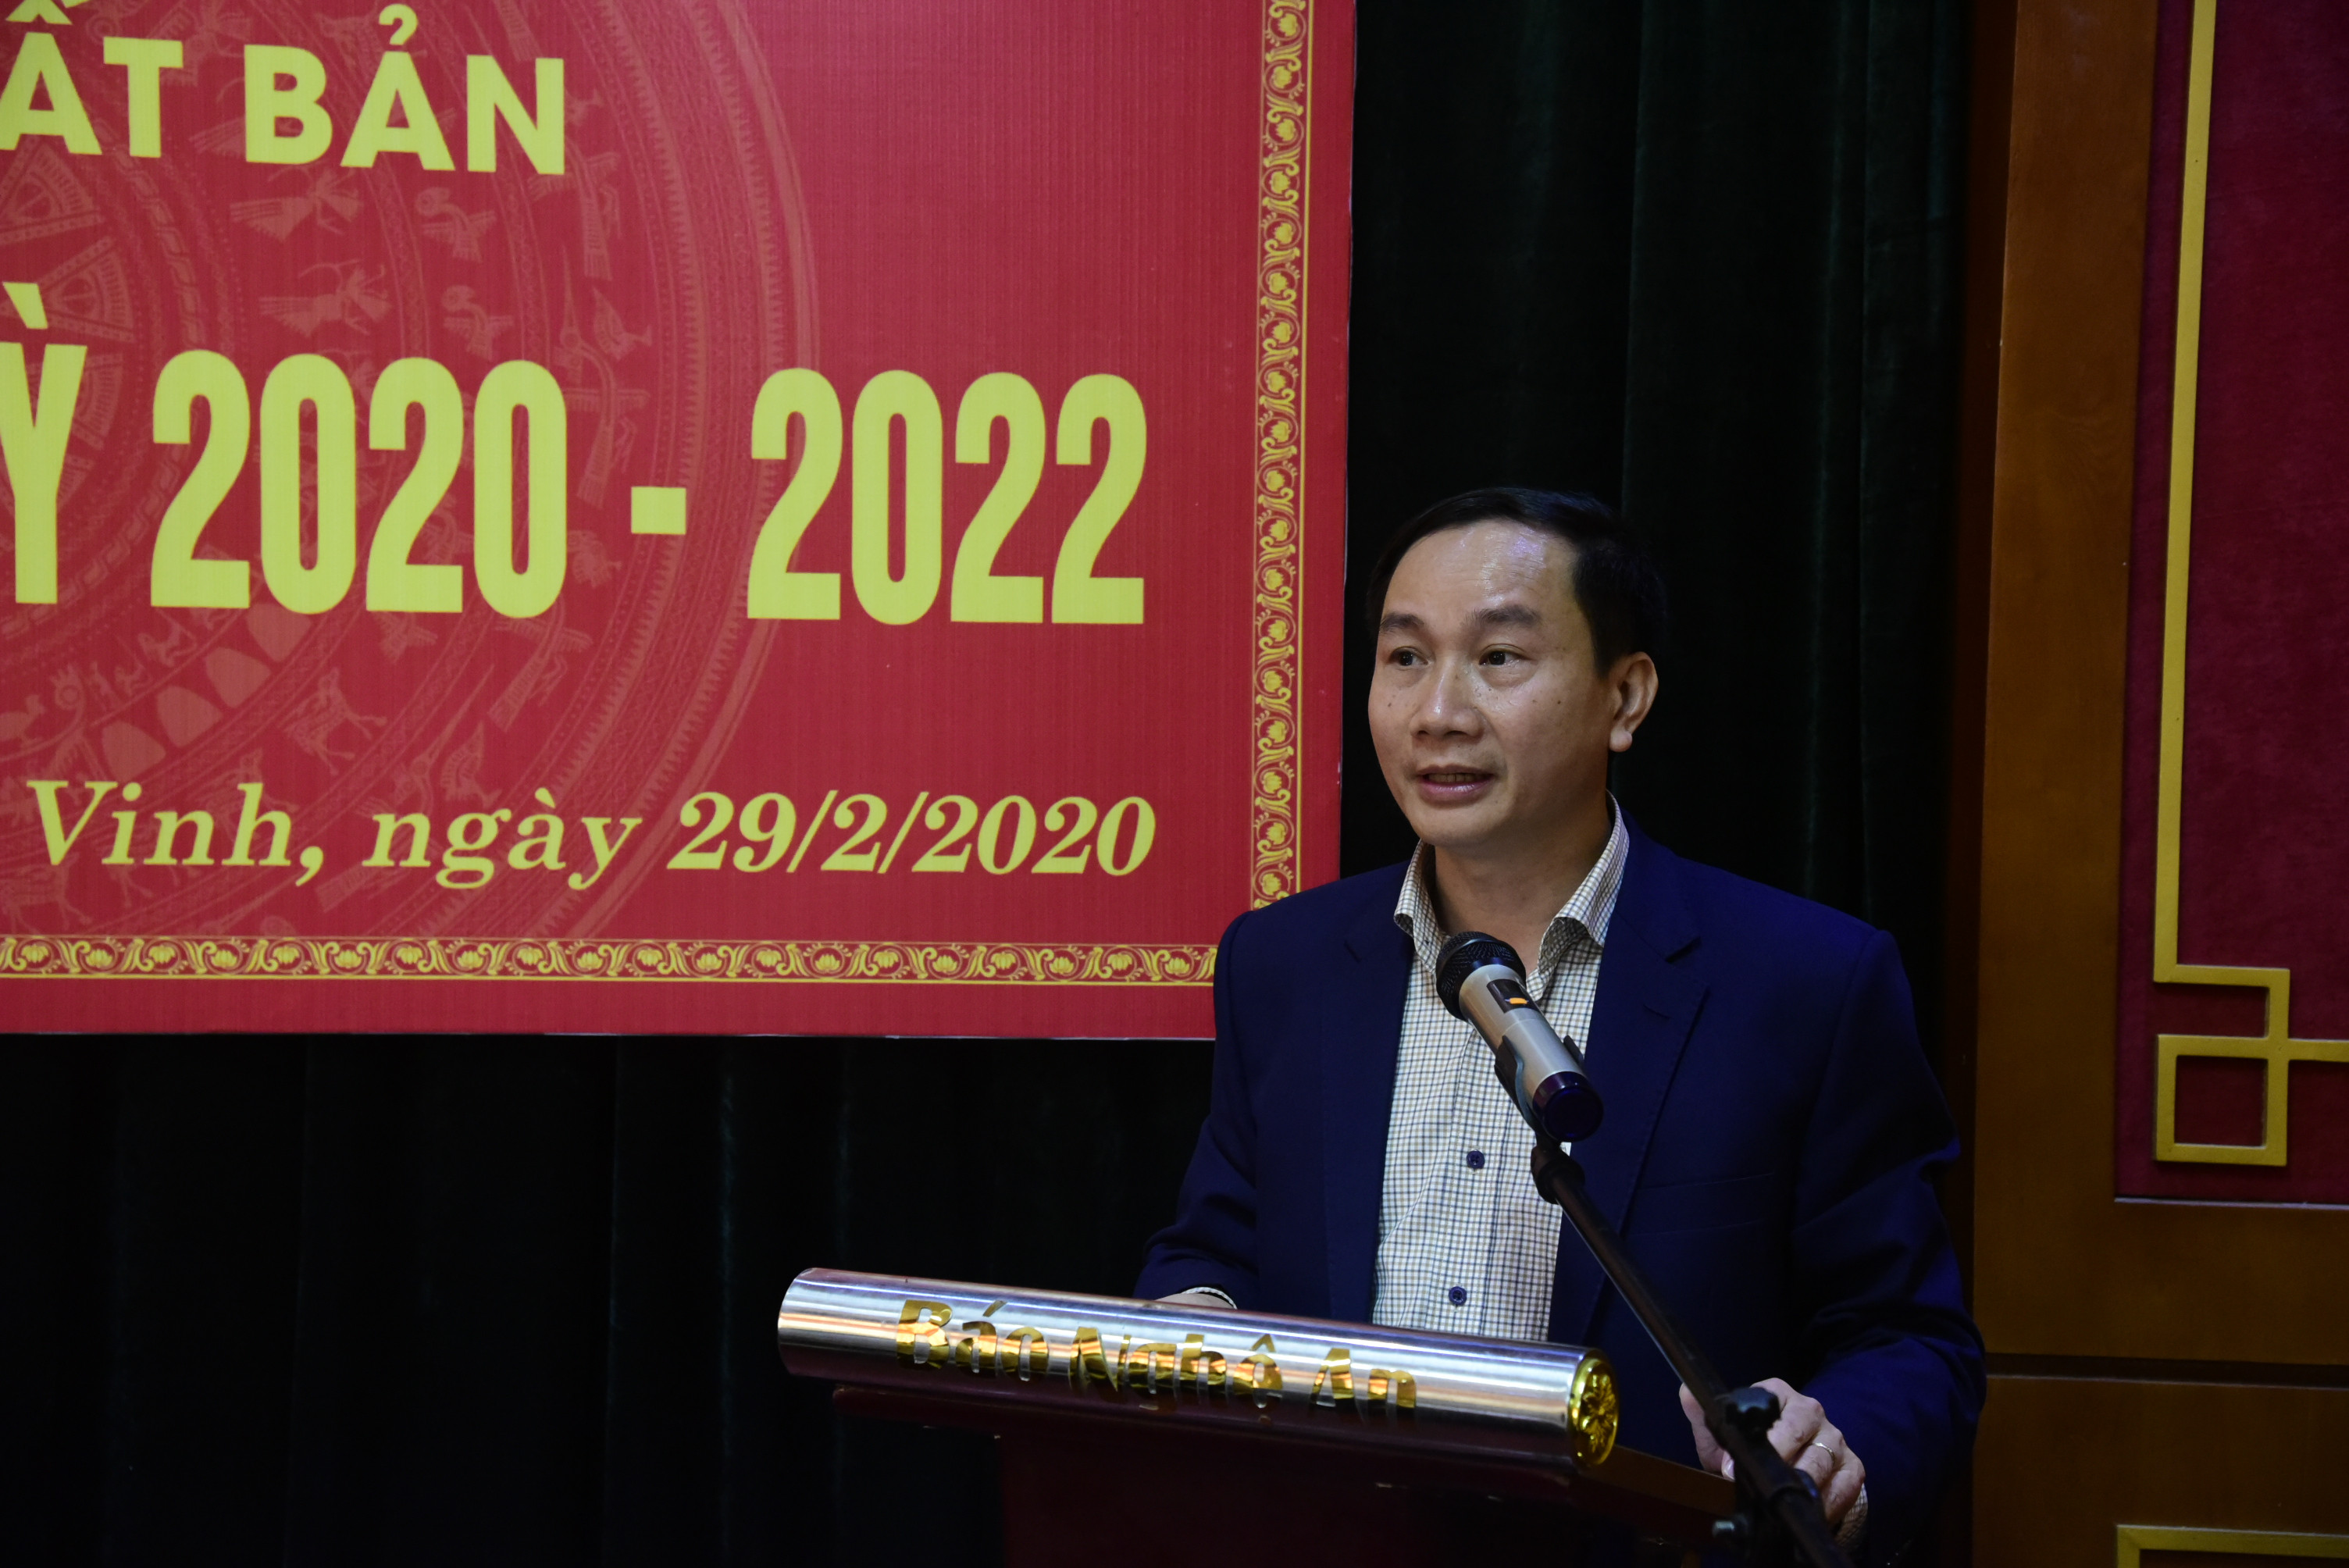 Đồng chí Trần Văn Hùng - Phó Bí thư Đảng ủy, Phó Tổng biên tập Báo Nghệ An phát biểu chỉ đạo tại Đại hội.